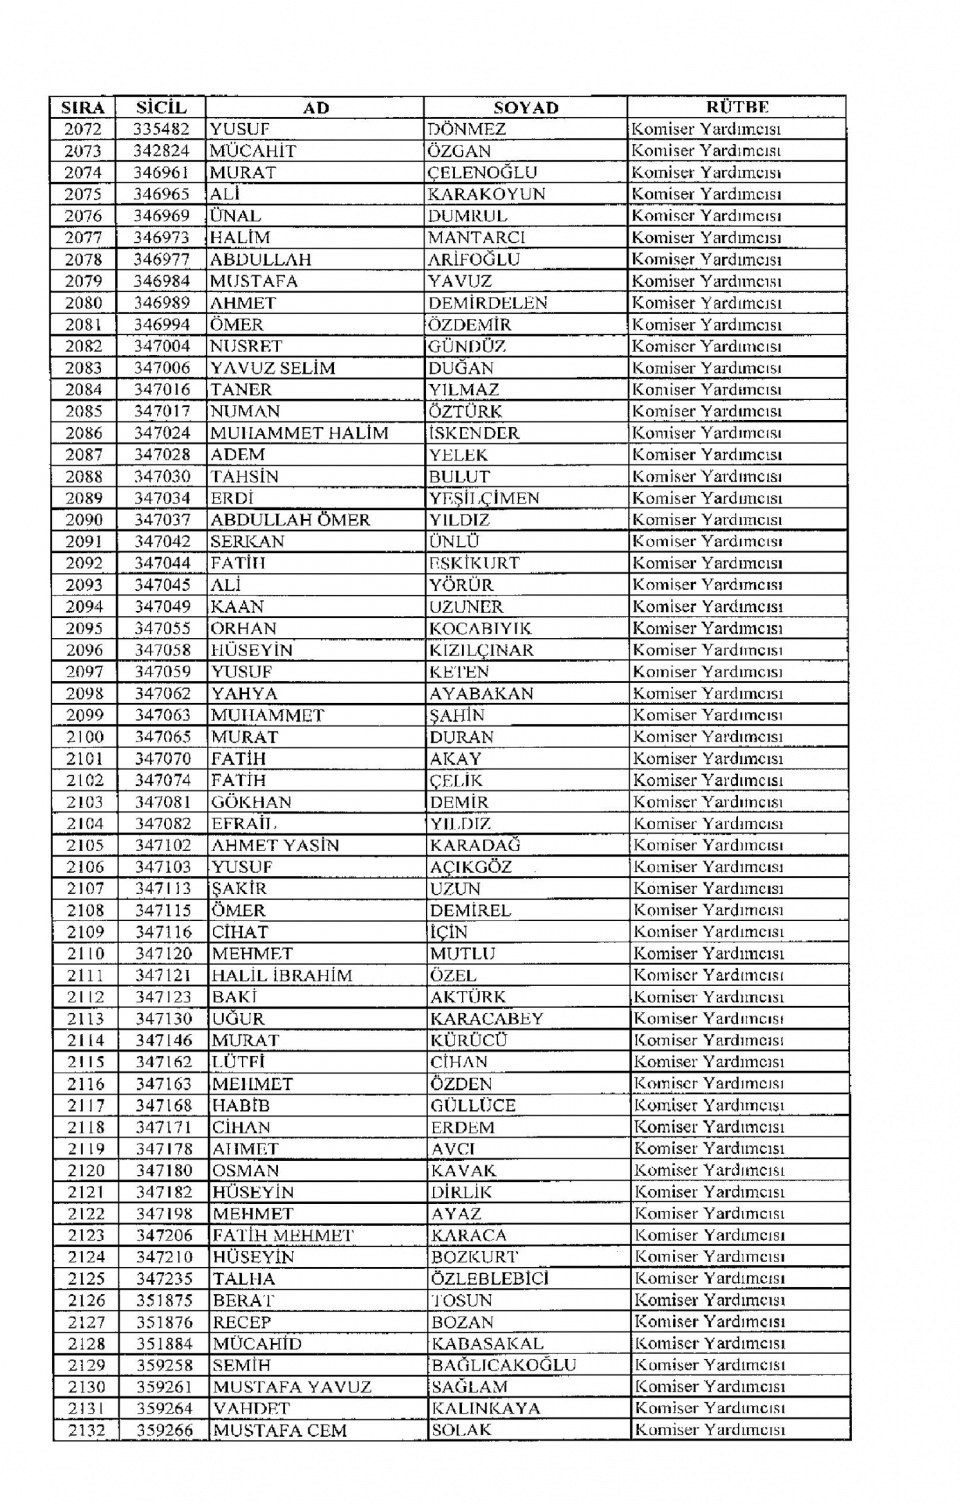 Kamudan ihraç edilenlerin isim isim listesi 87